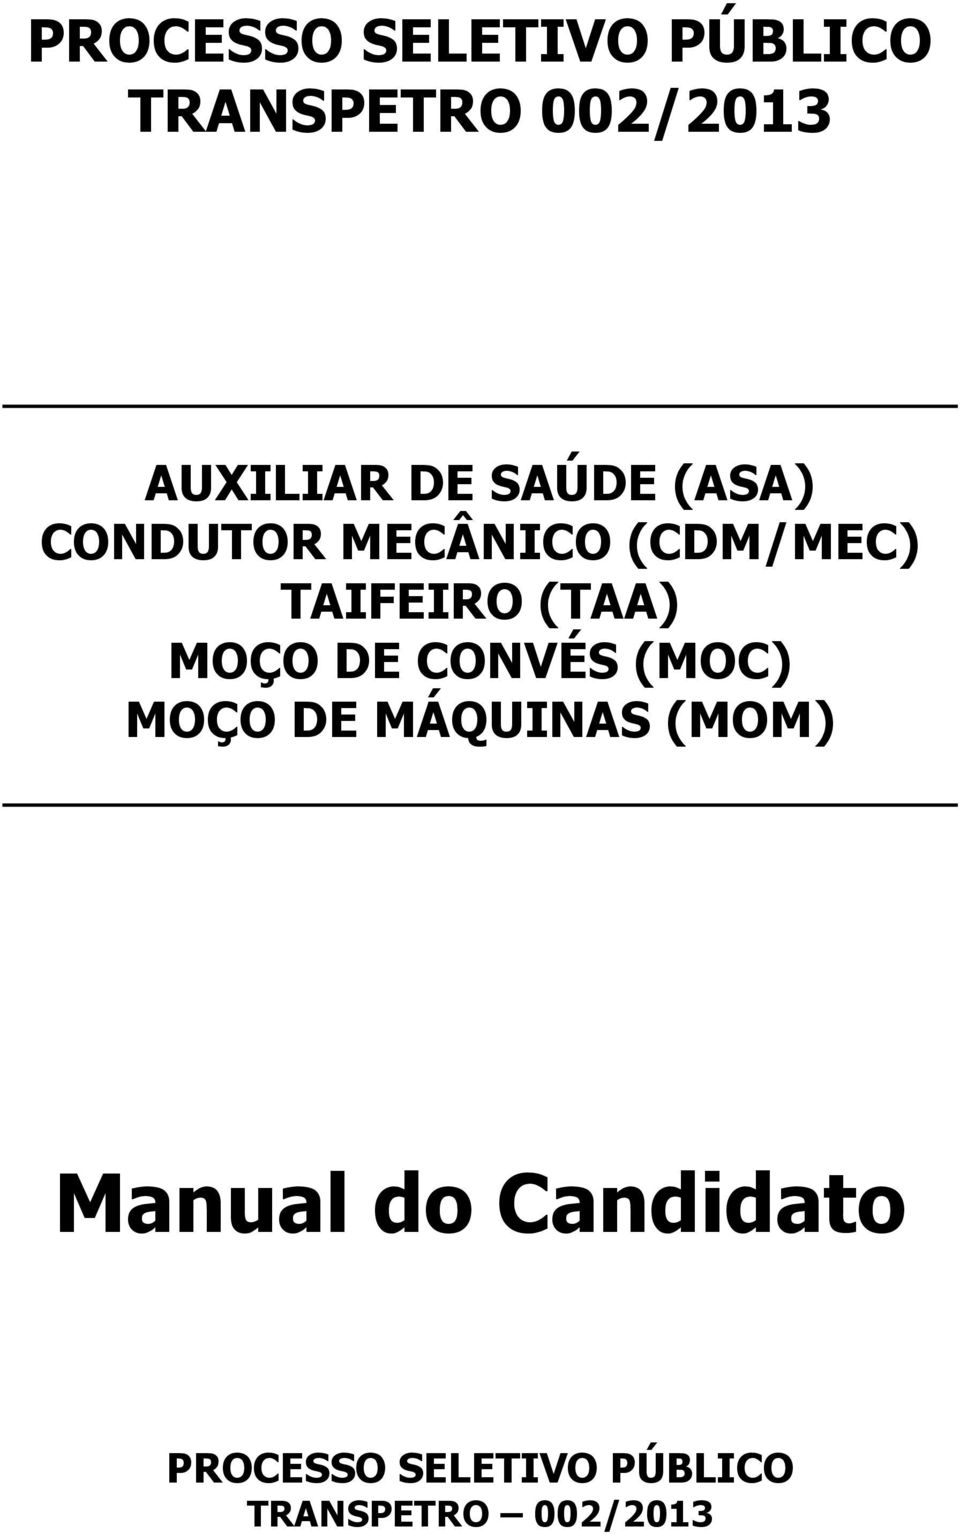 (TAA) MOÇO DE CONVÉS (MOC) MOÇO DE MÁQUINAS (MOM)